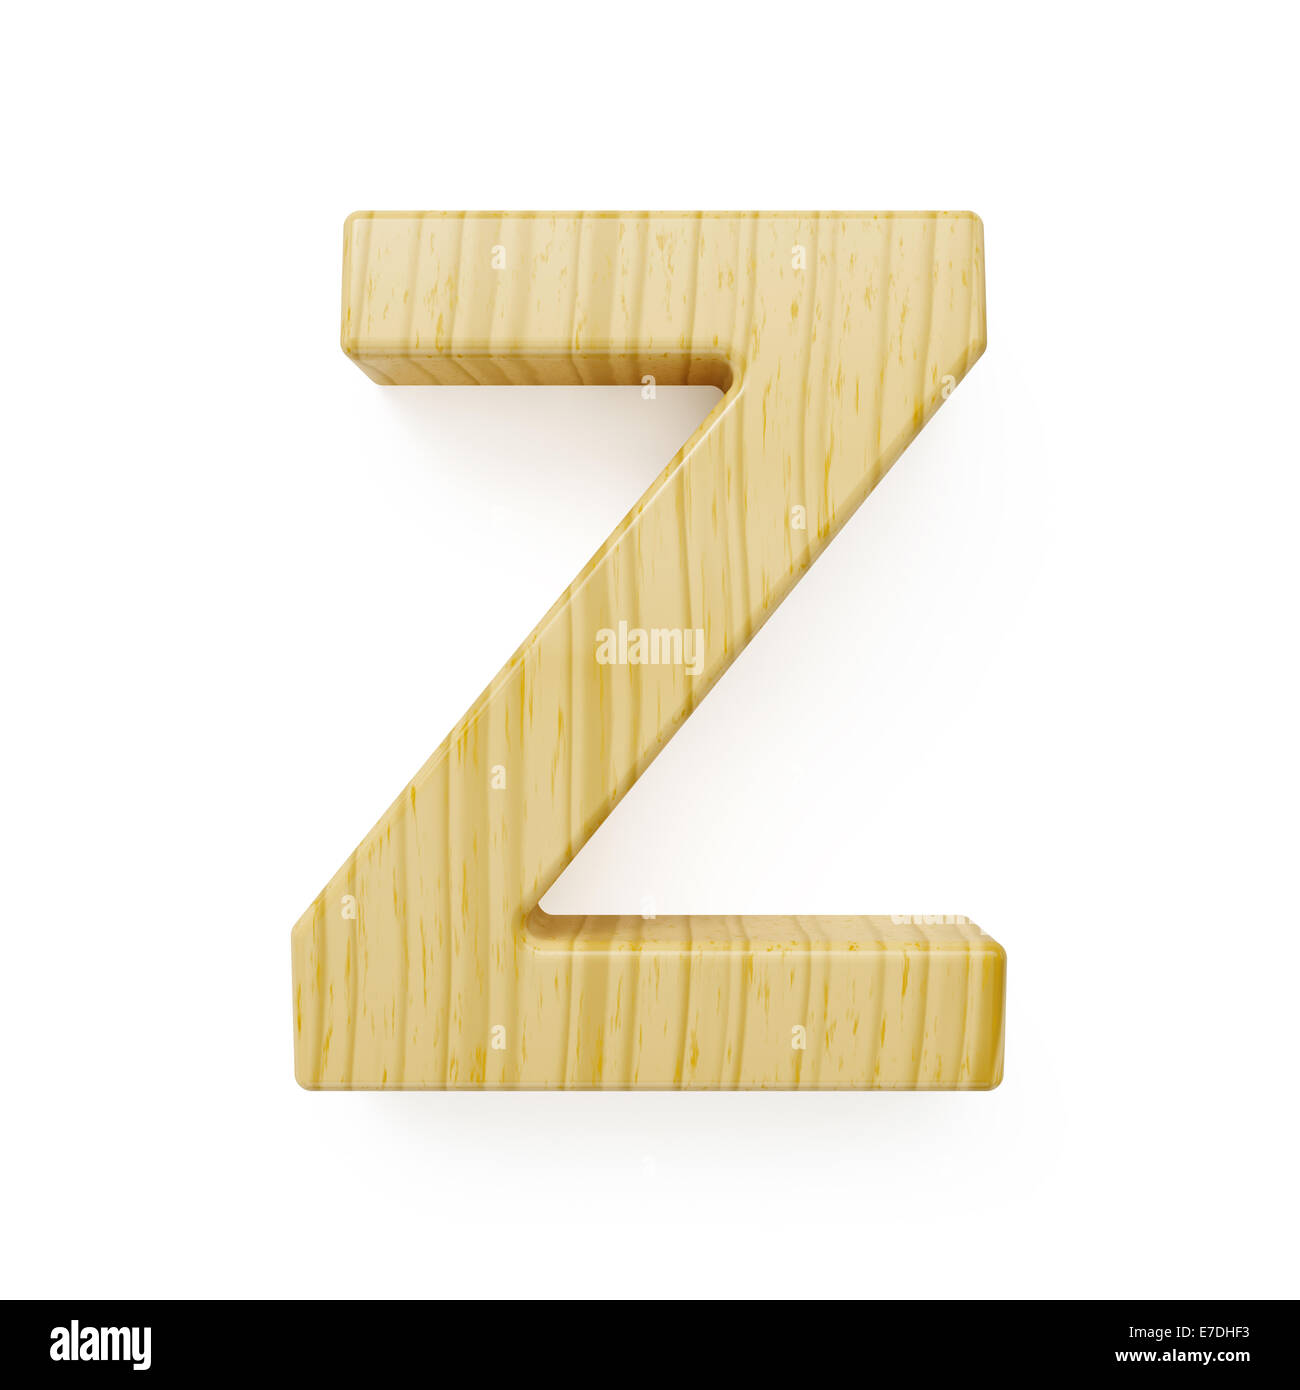 Wood alphabet letter symbol - Z. Isolated on white background Stock Photo